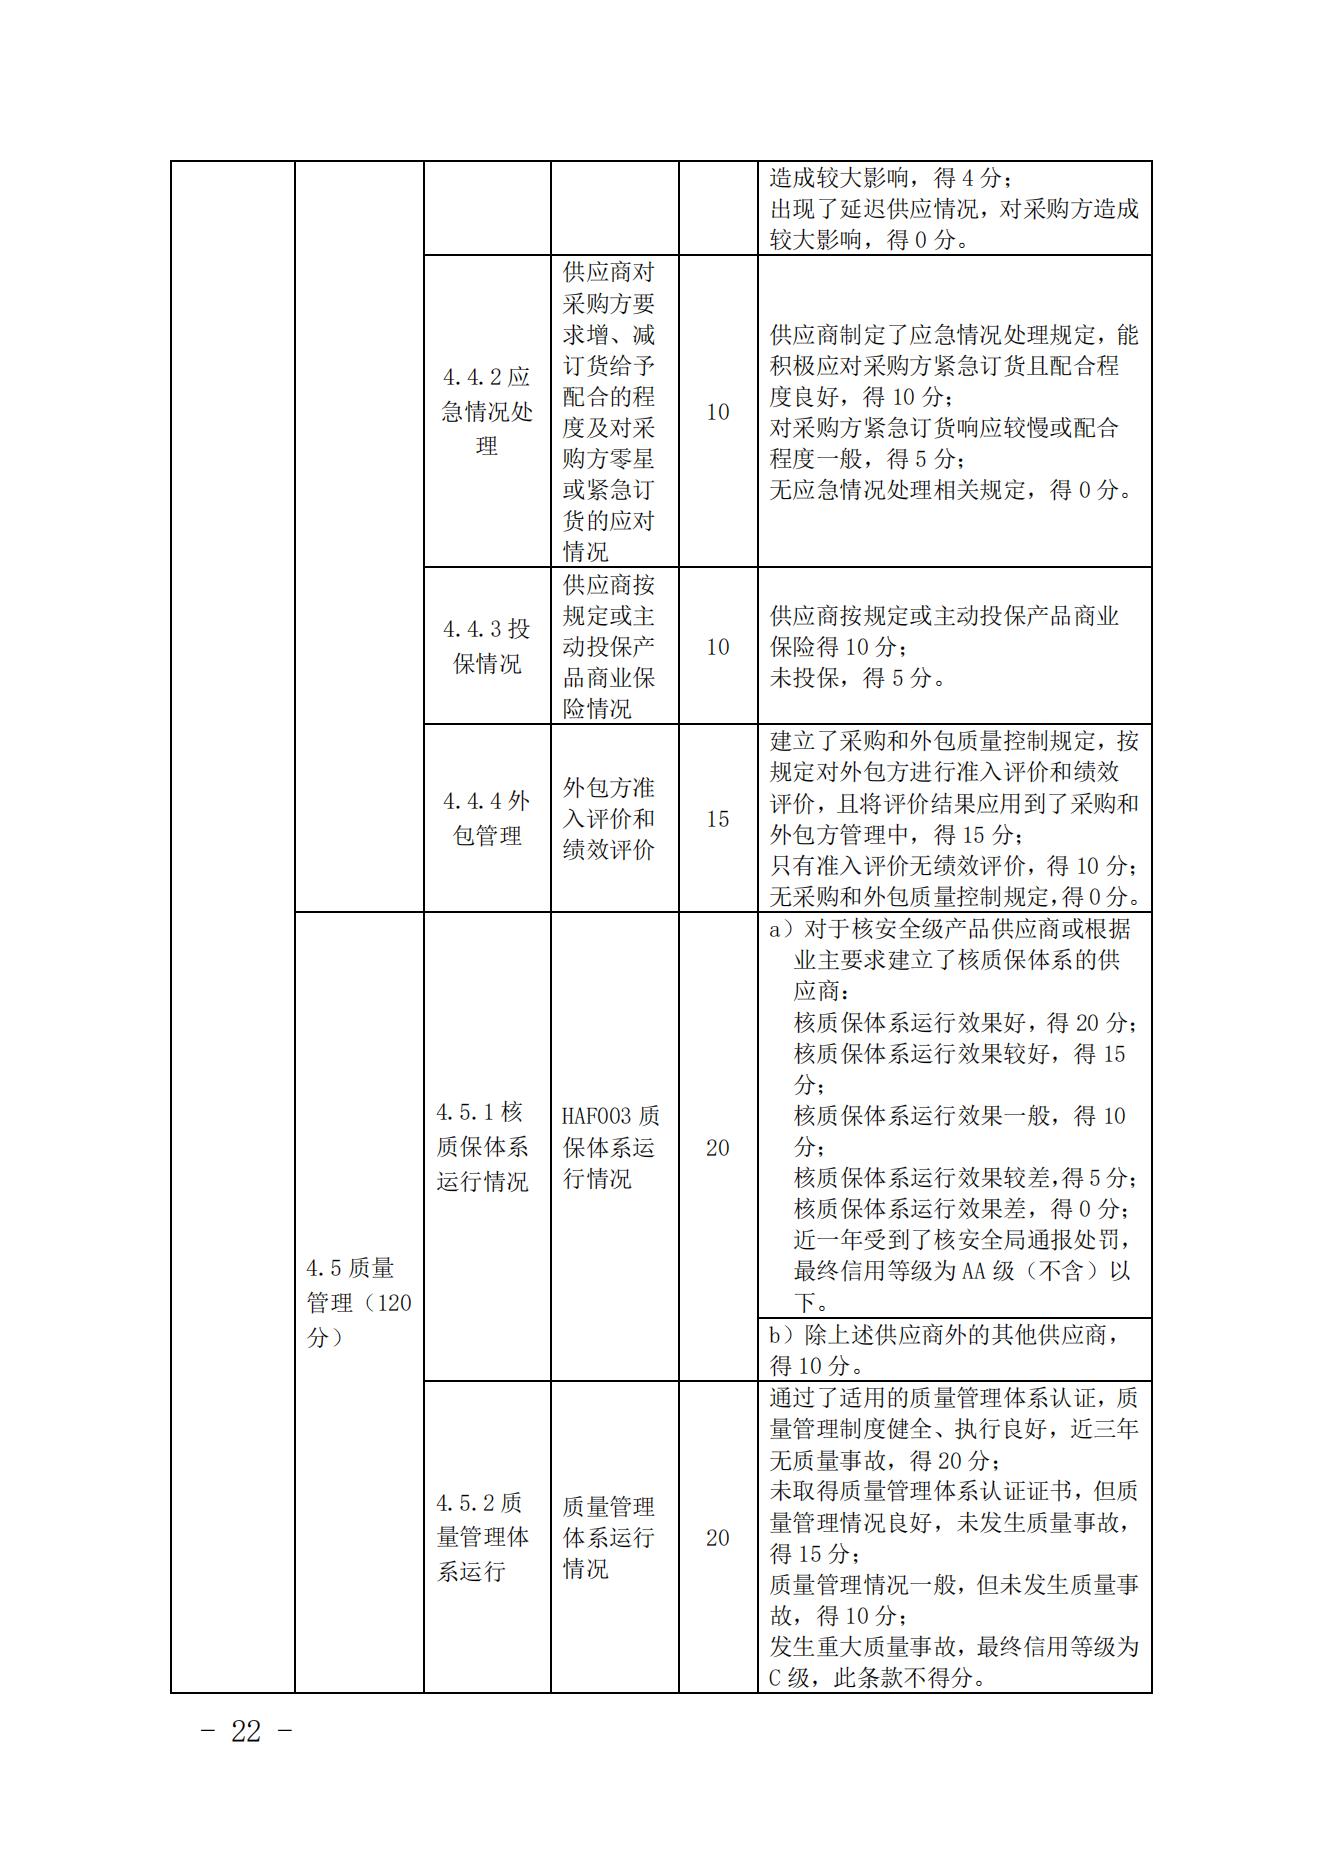 关于印发《中国核能行业协会核能行业供应商信用评价管理办法》《中国核能行业协会核能行业供应商信用评价规范》的通知_21.jpg